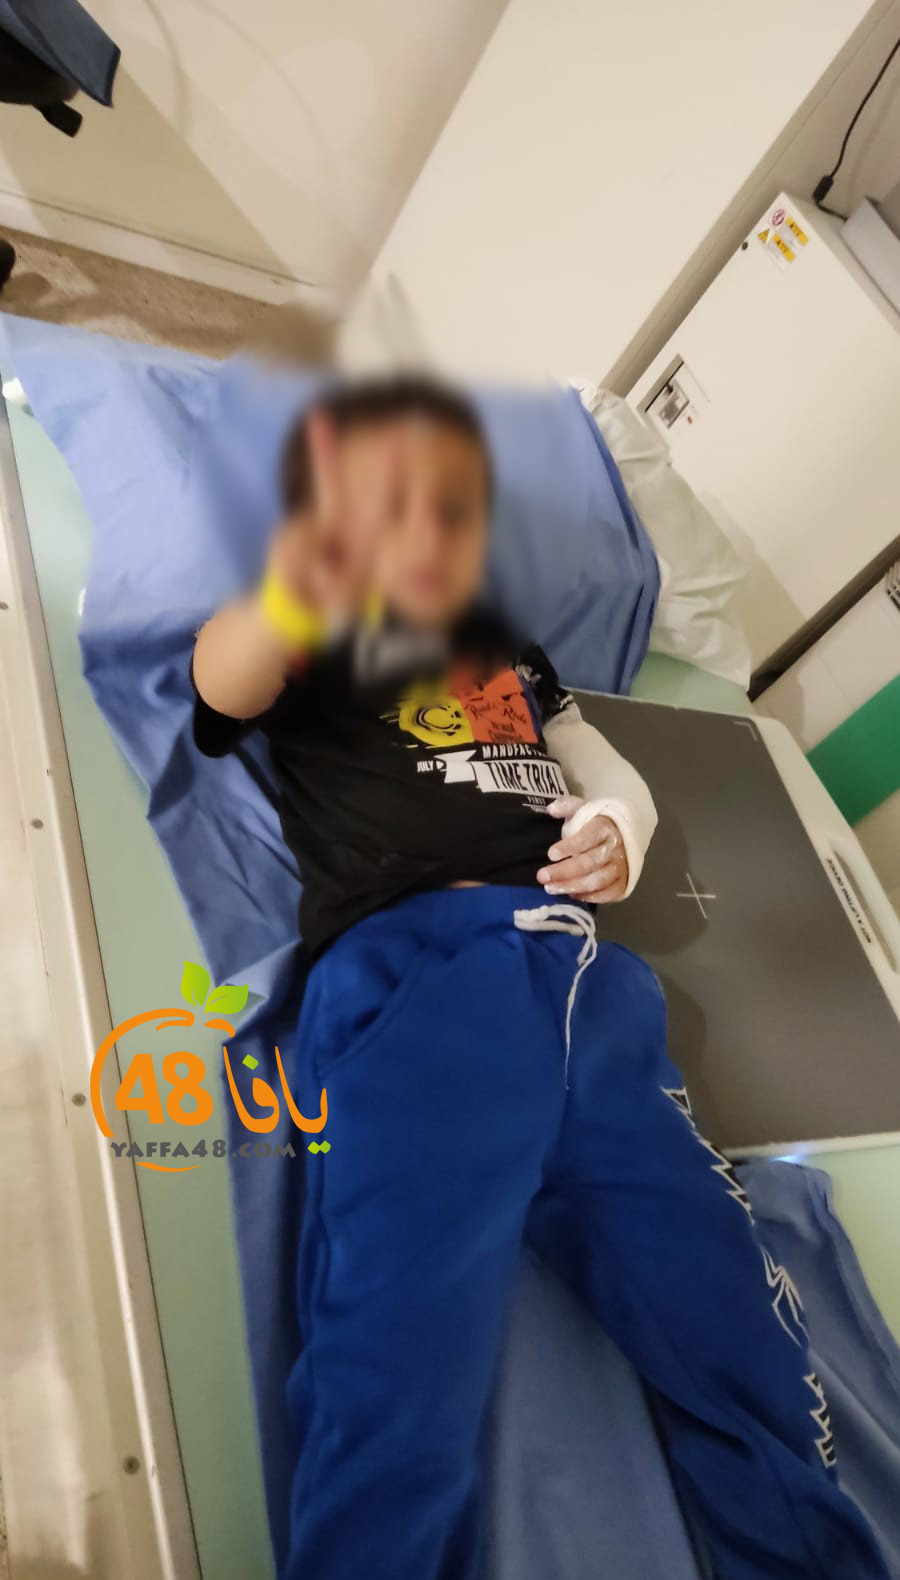 اصابة متوسطة لطفل اثر سقوطه في وادي اللد 